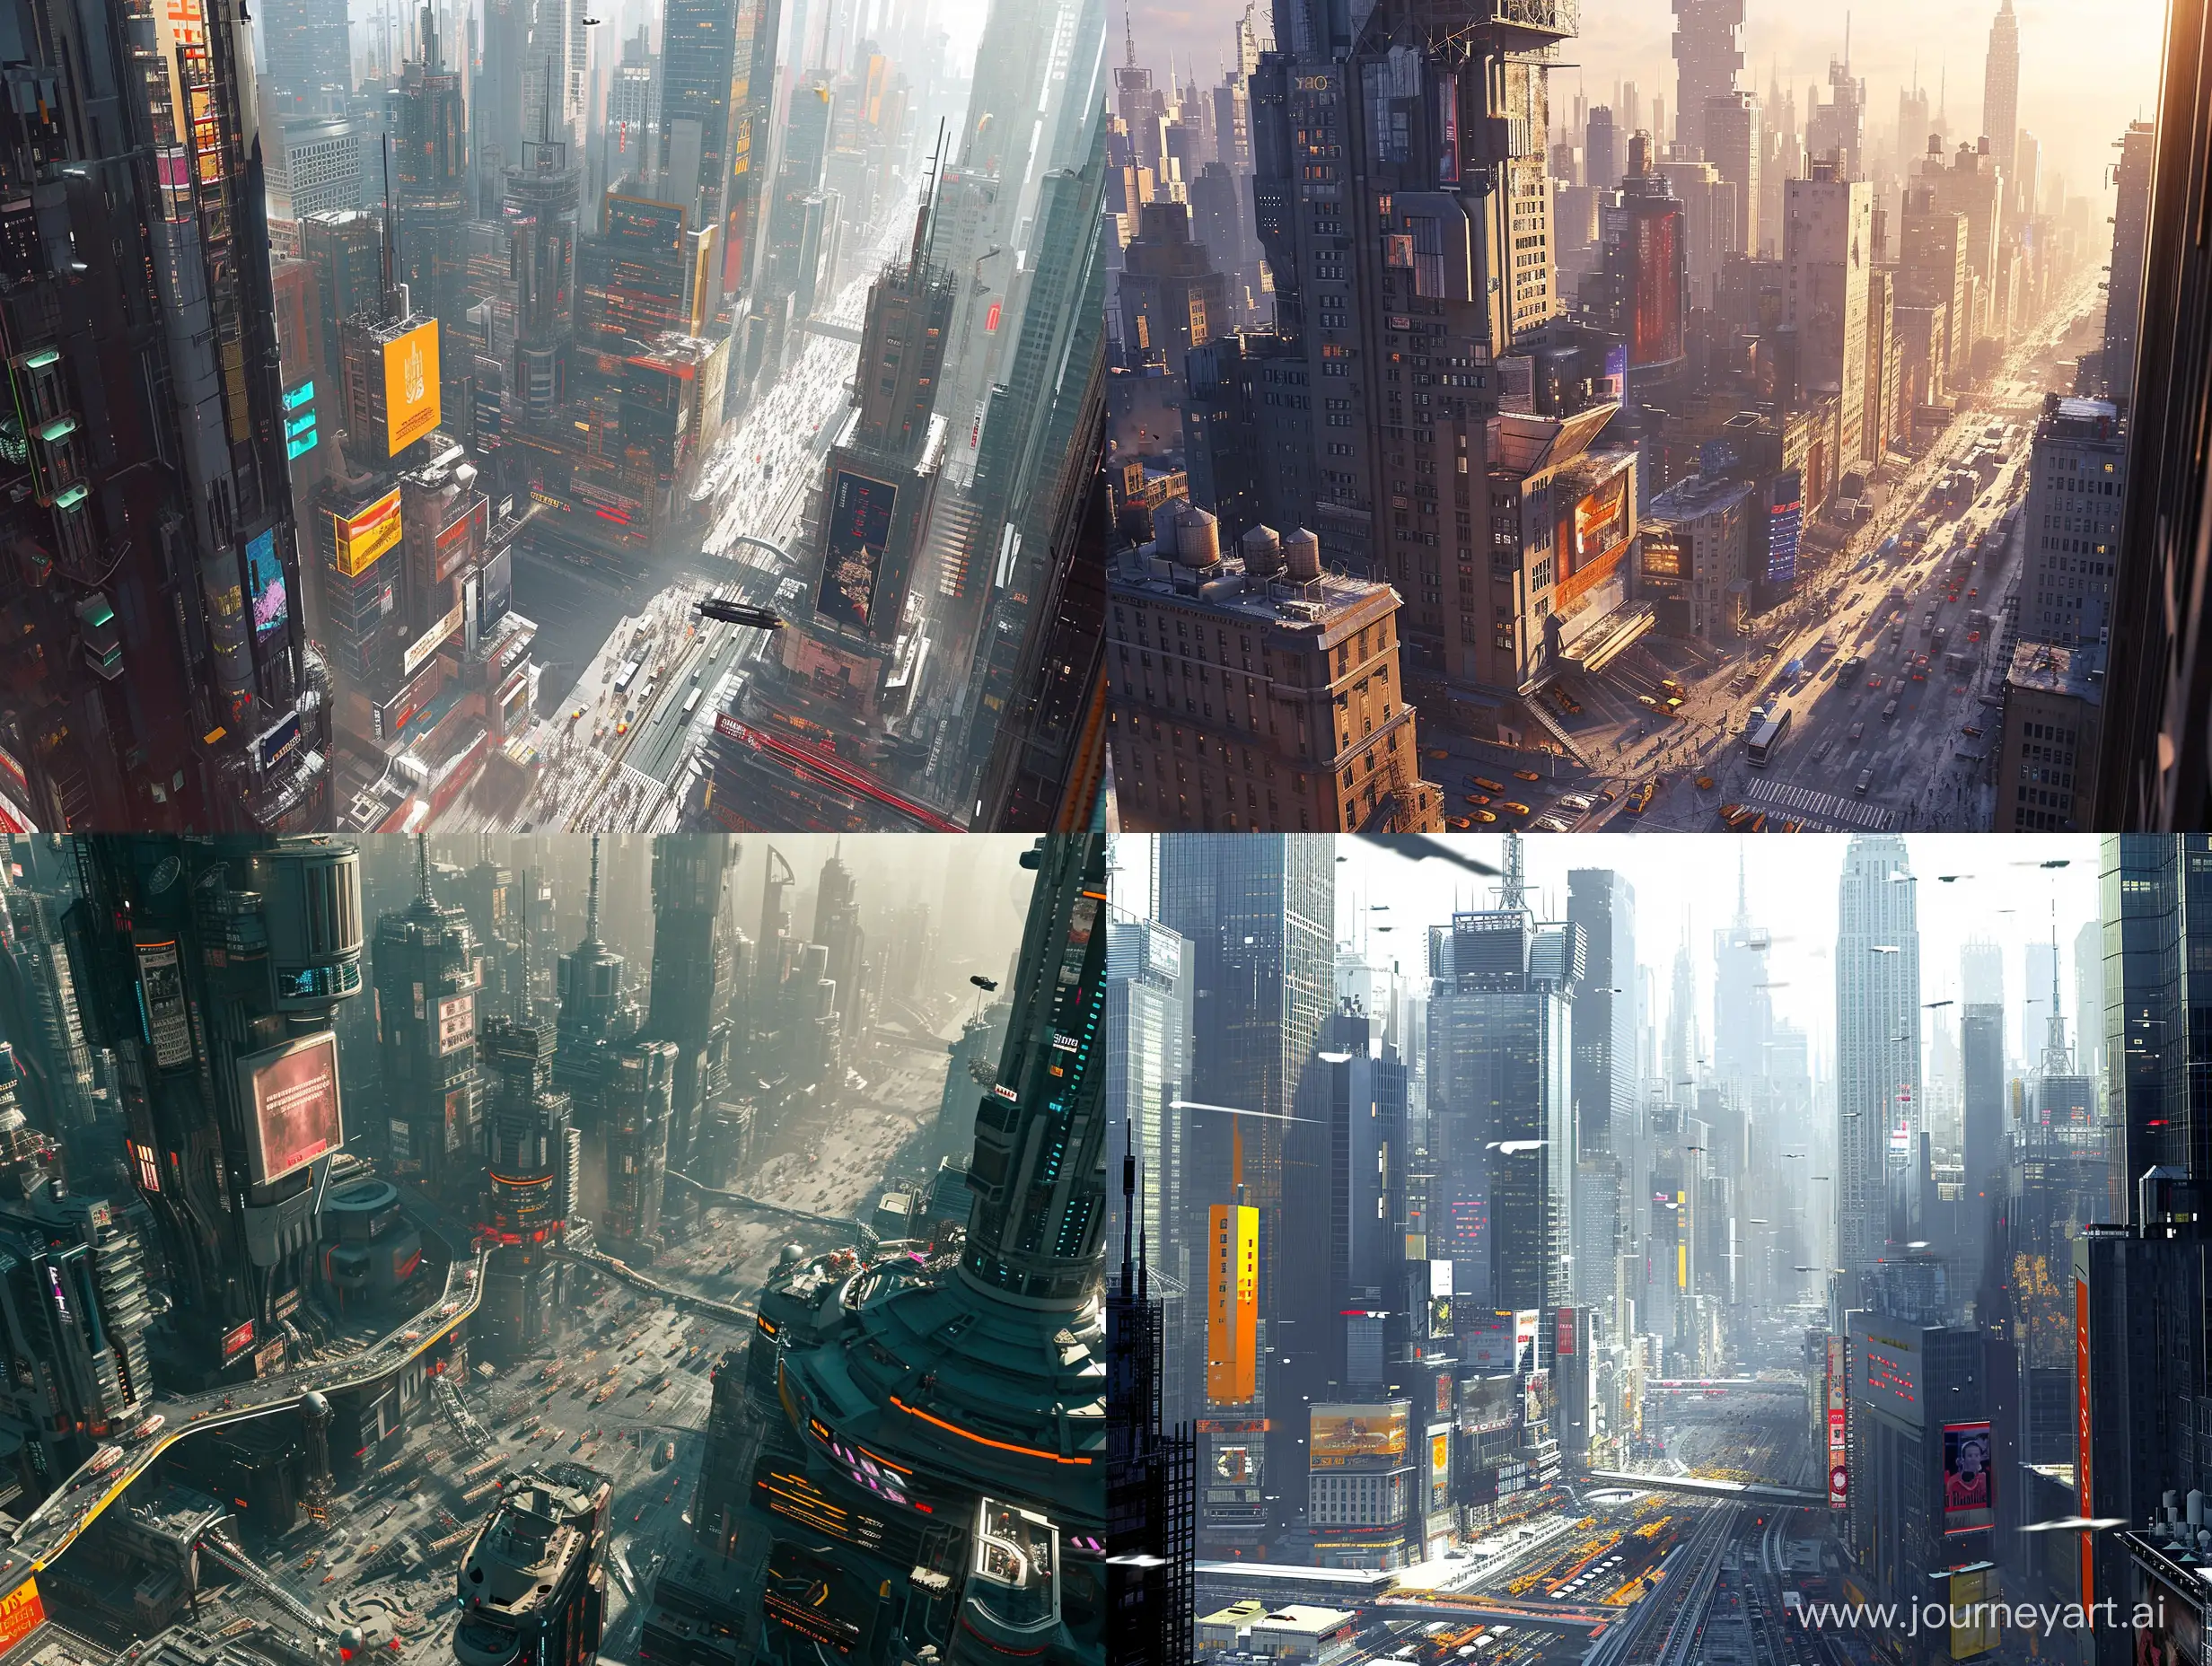 Vibrant-Dystopian-Futuristic-Cityscape-in-New-York-Style